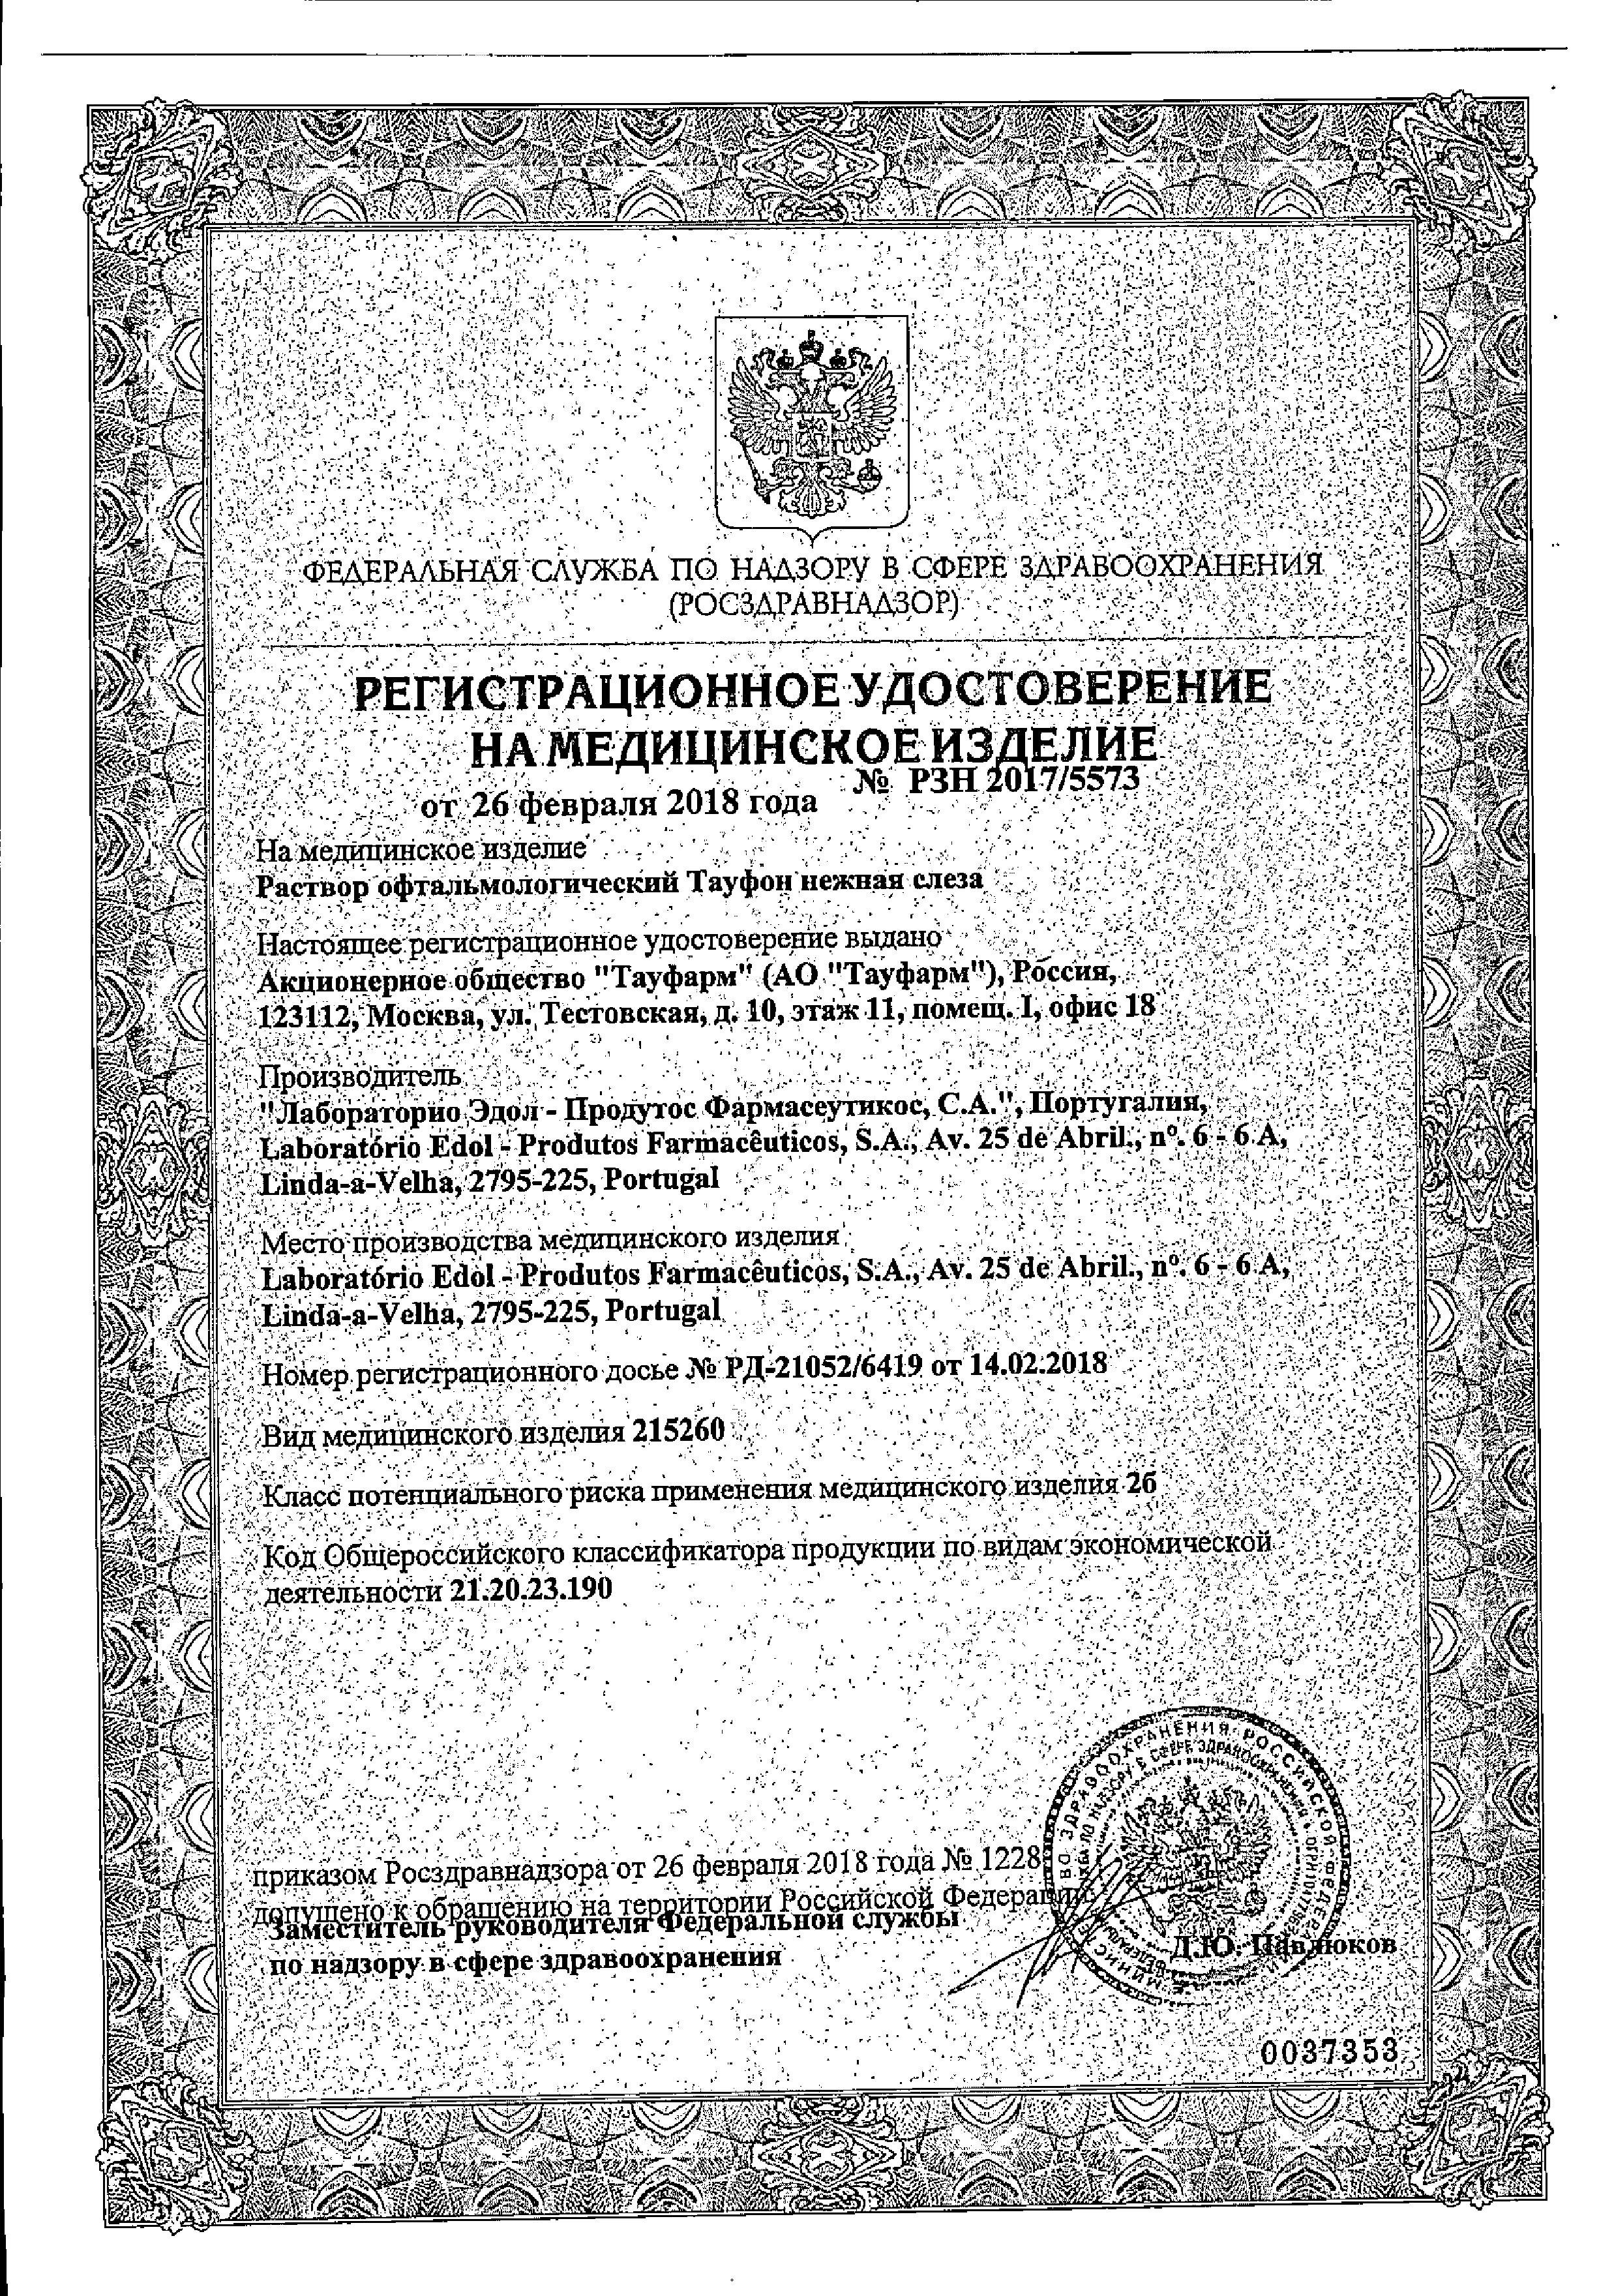 Тауфон Нежная слеза сертификат